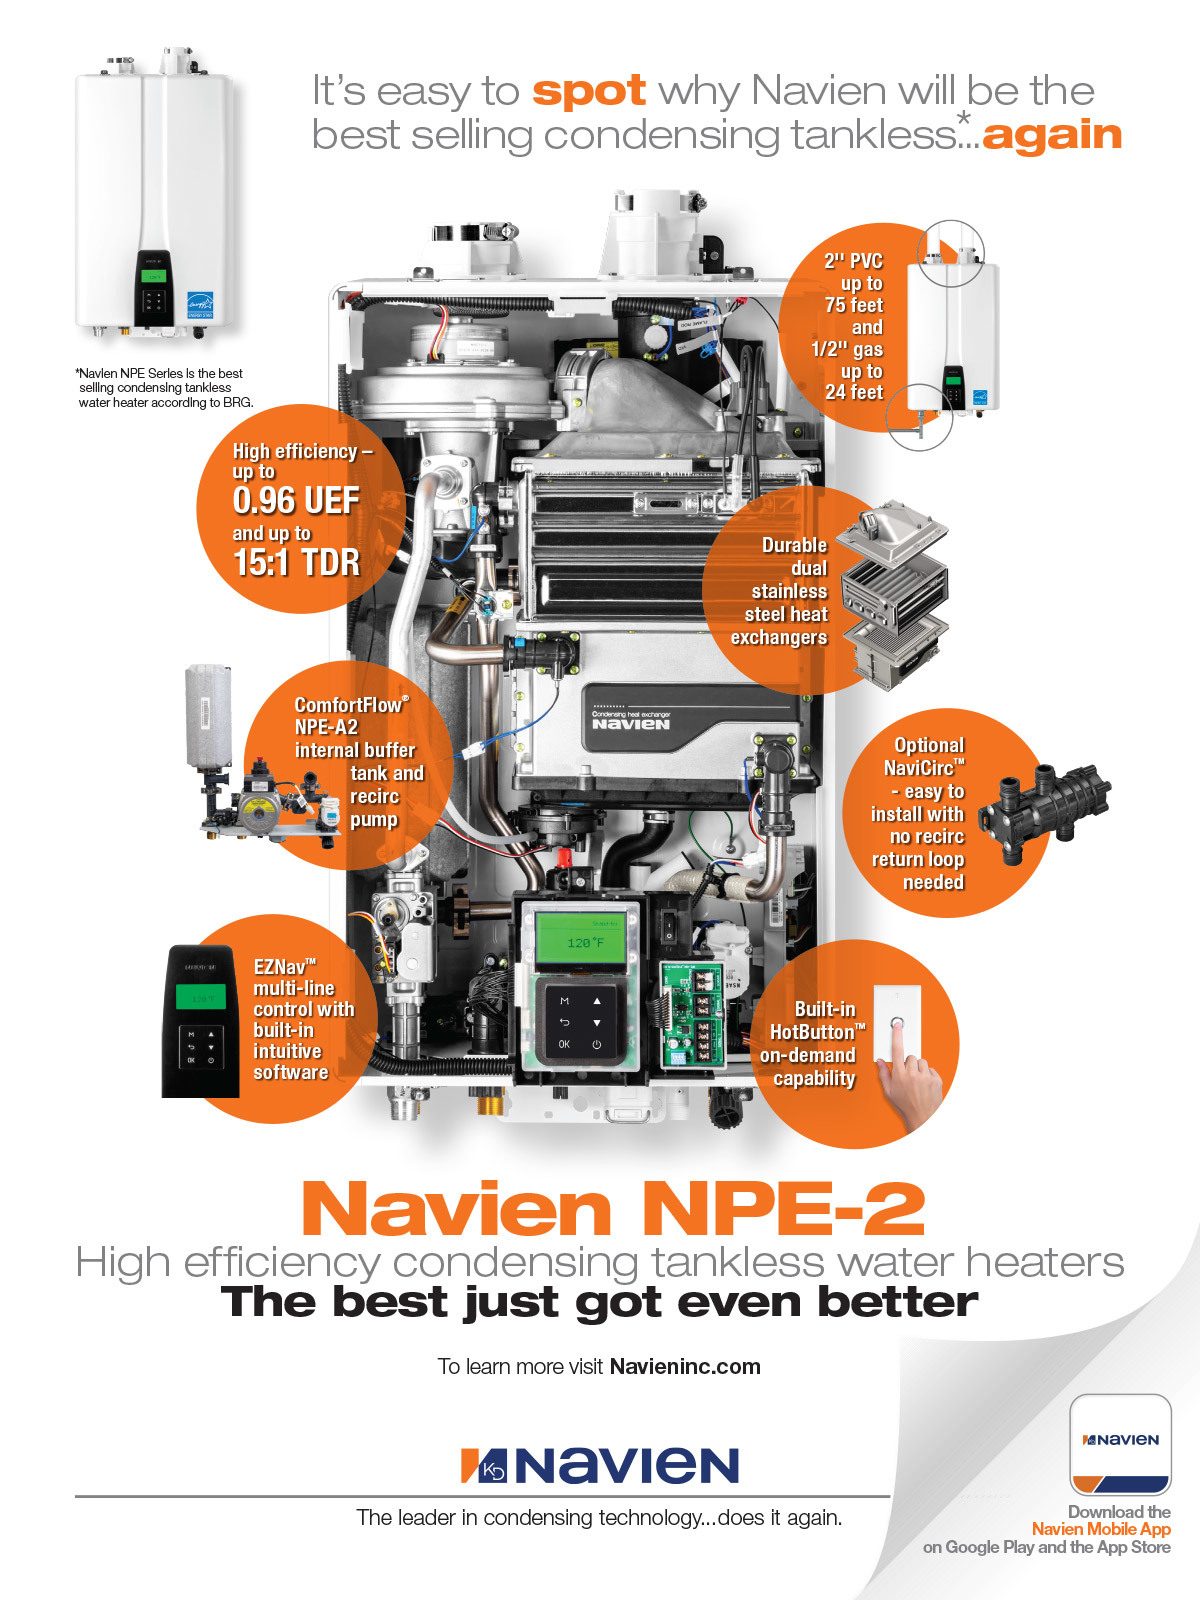 Navien NPE-2